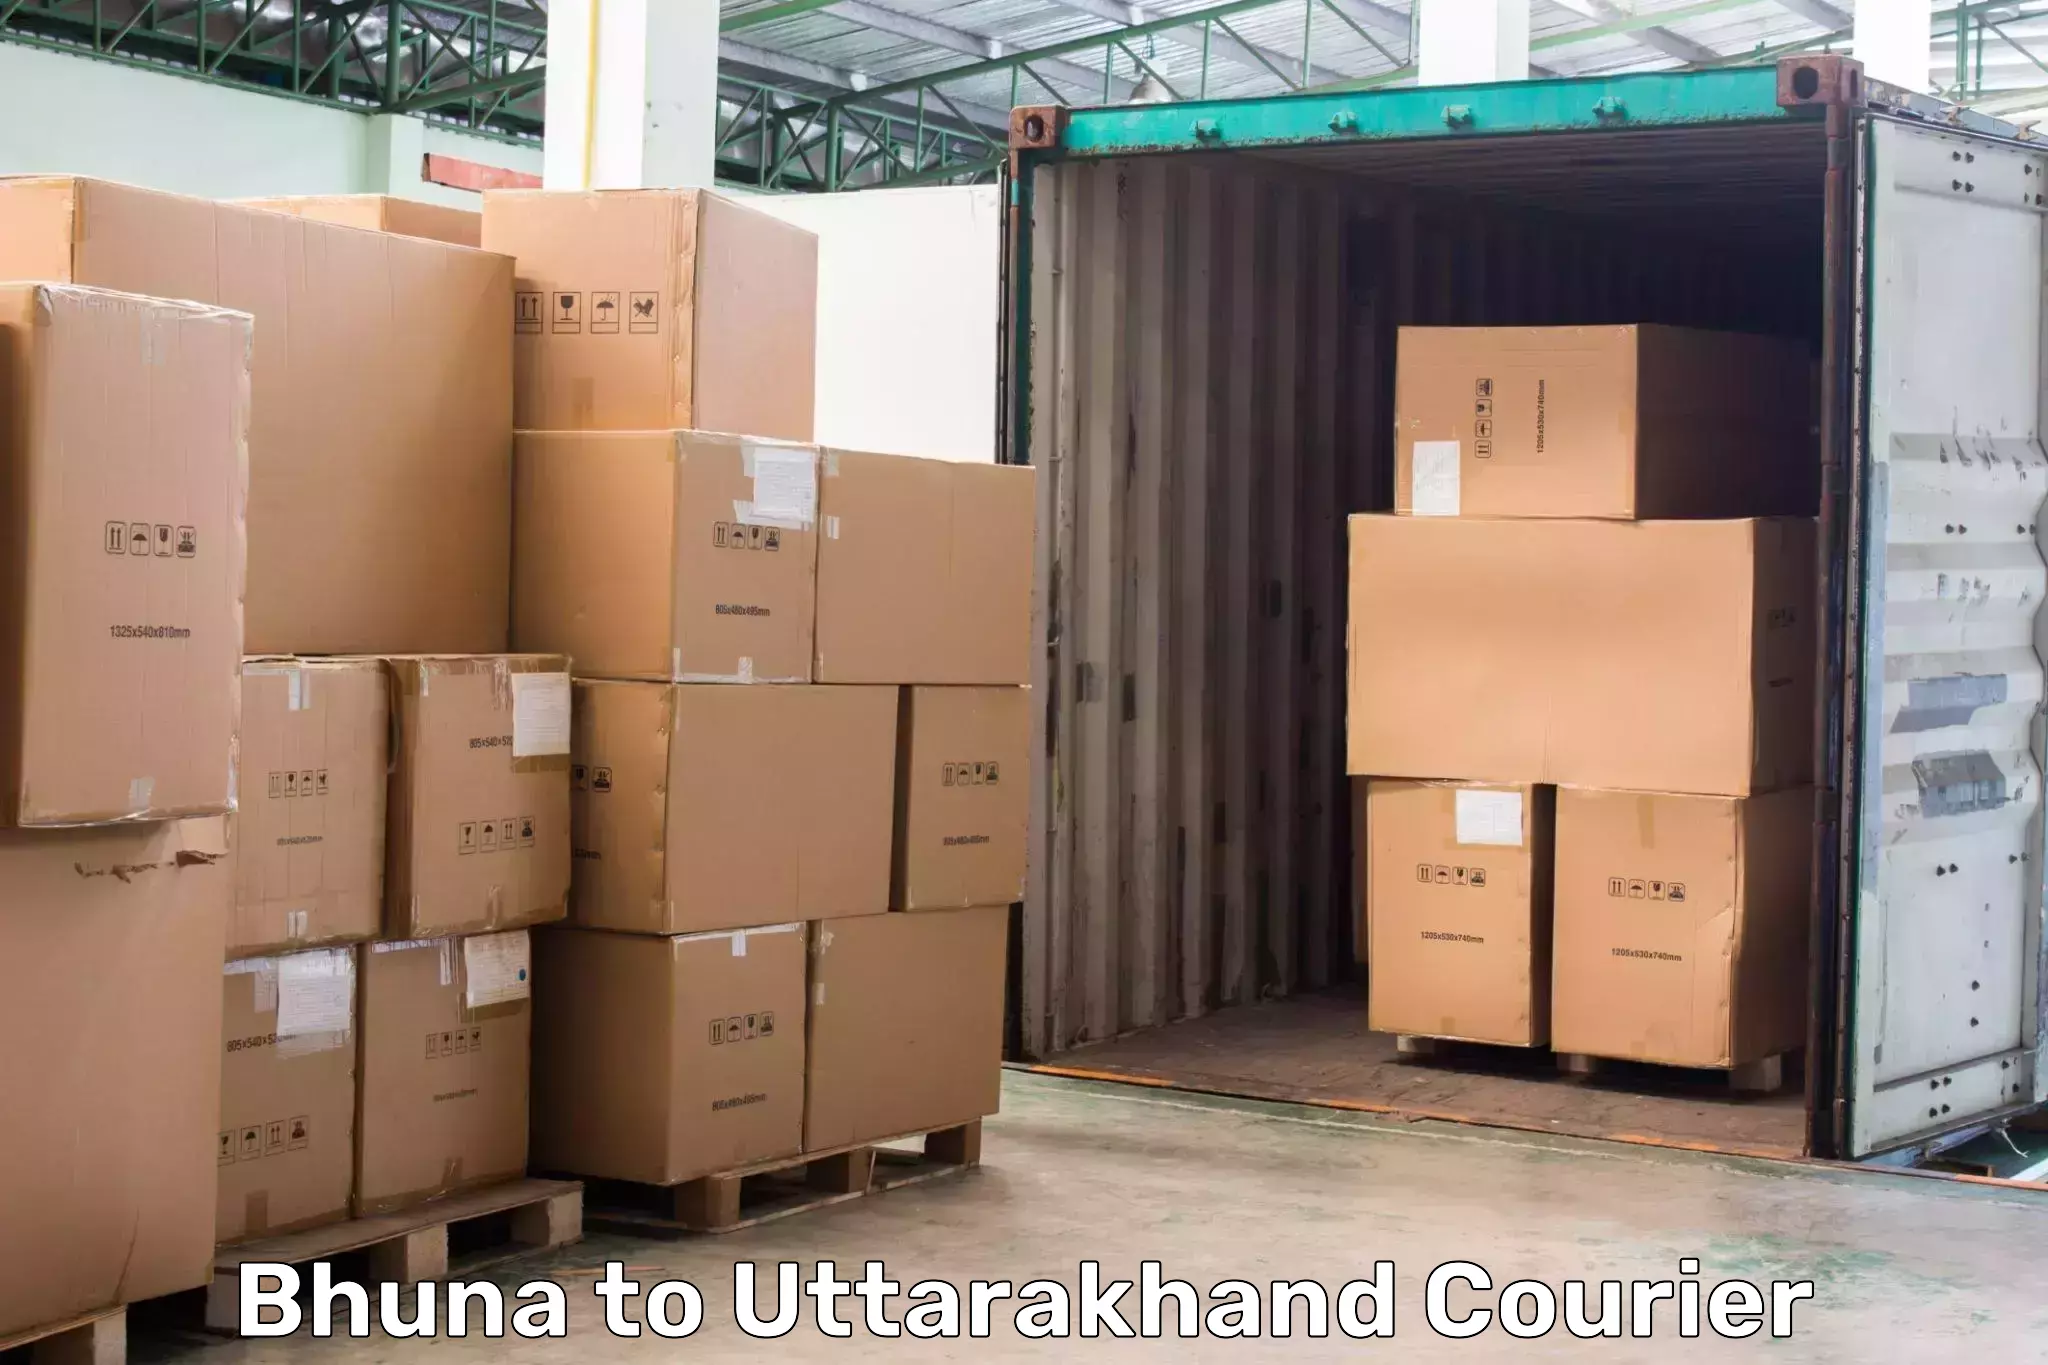 Courier service comparison Bhuna to Rishikesh